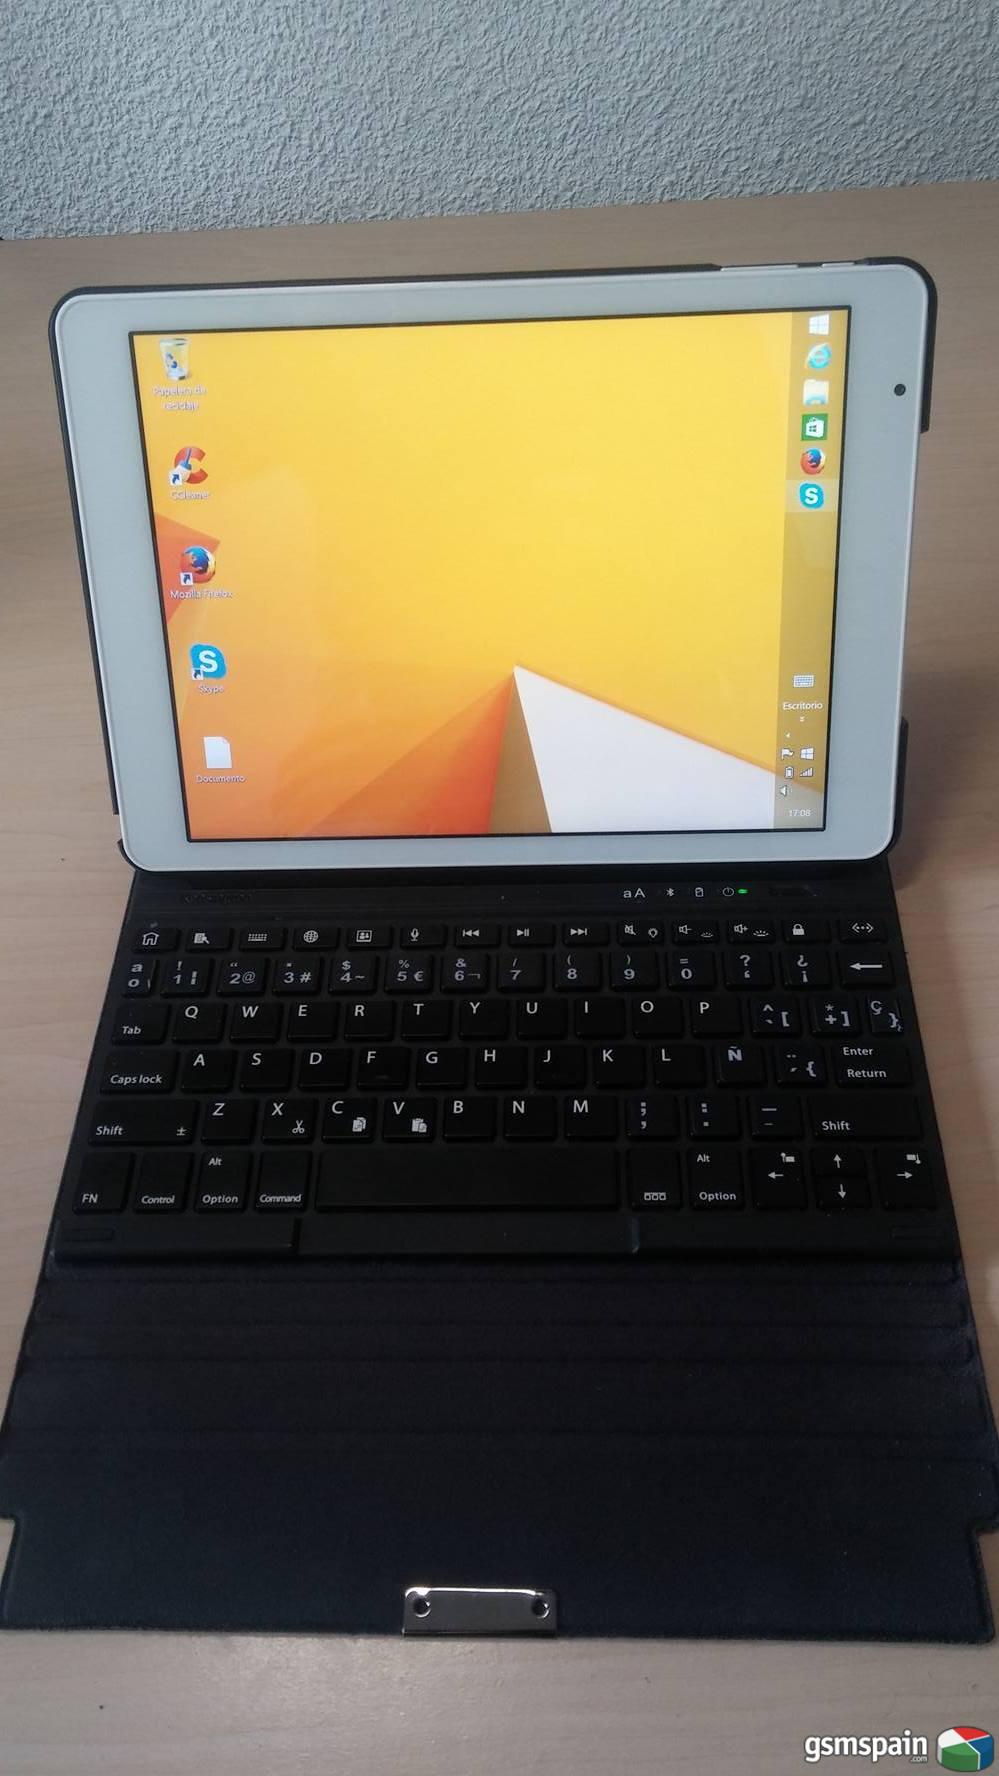 [VENDO] Tablet Teclast x98 air 3g 9.7 pulgadas con Funda teclado bluetooth kesington y mas.